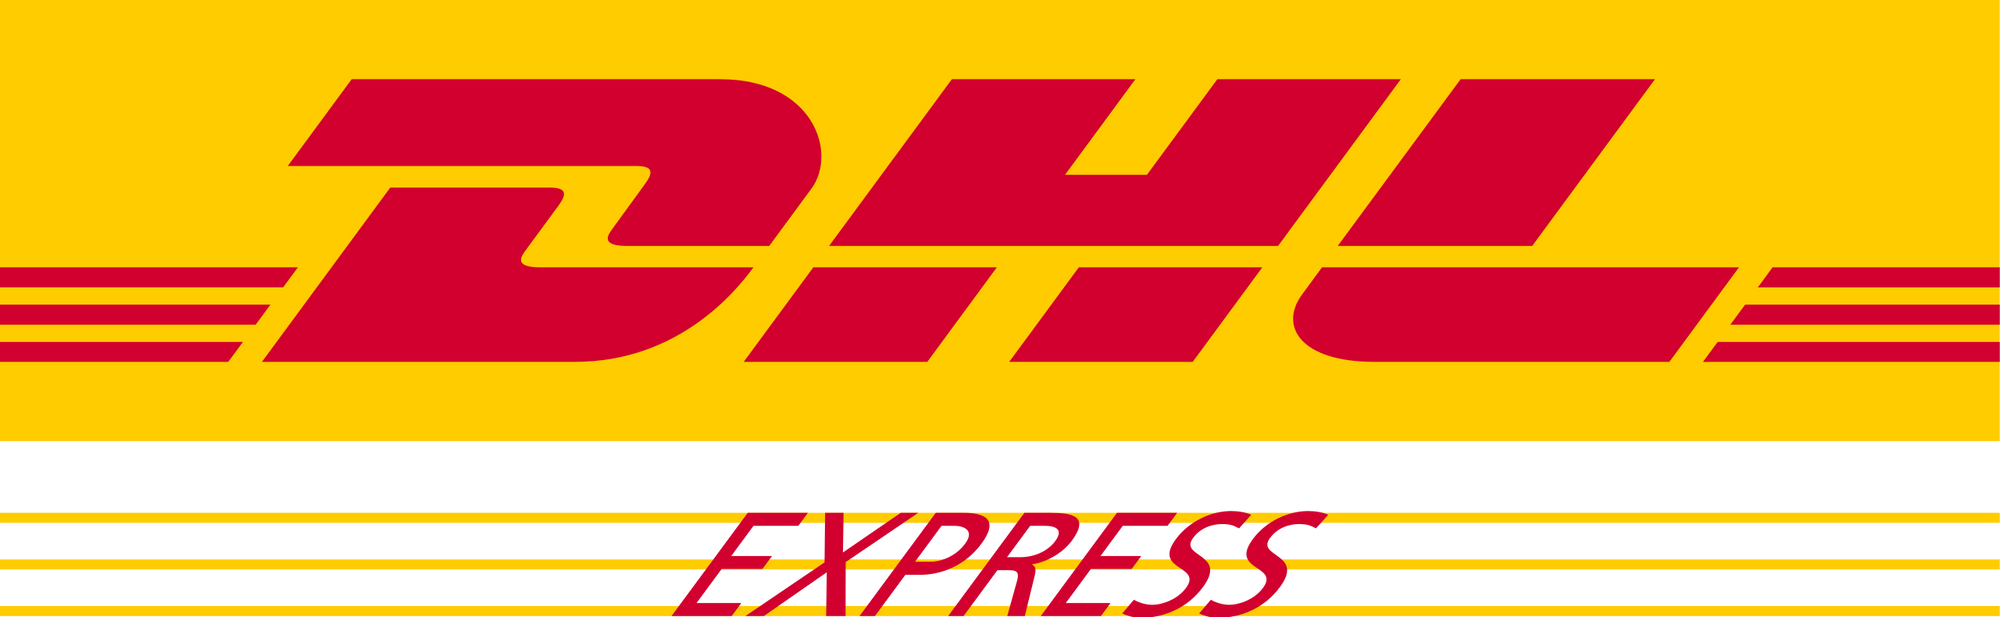 logo dhl express